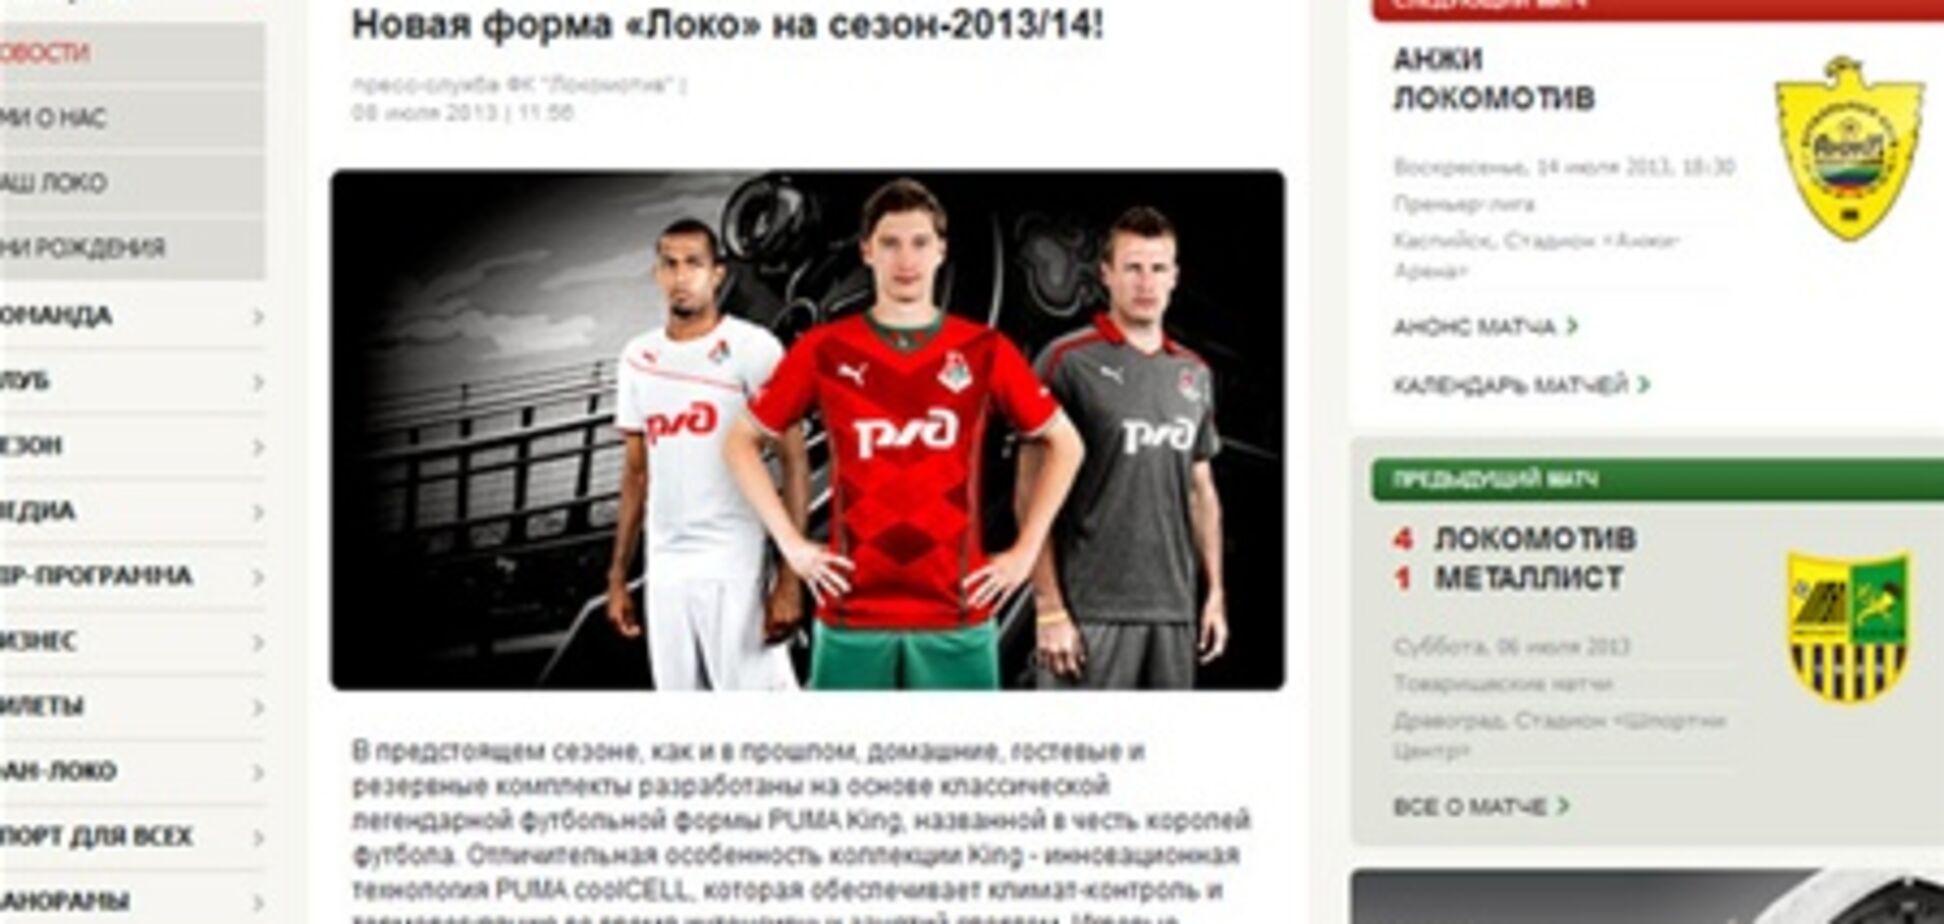 Российские футболисты представили новую форму на фоне нацистского поезда